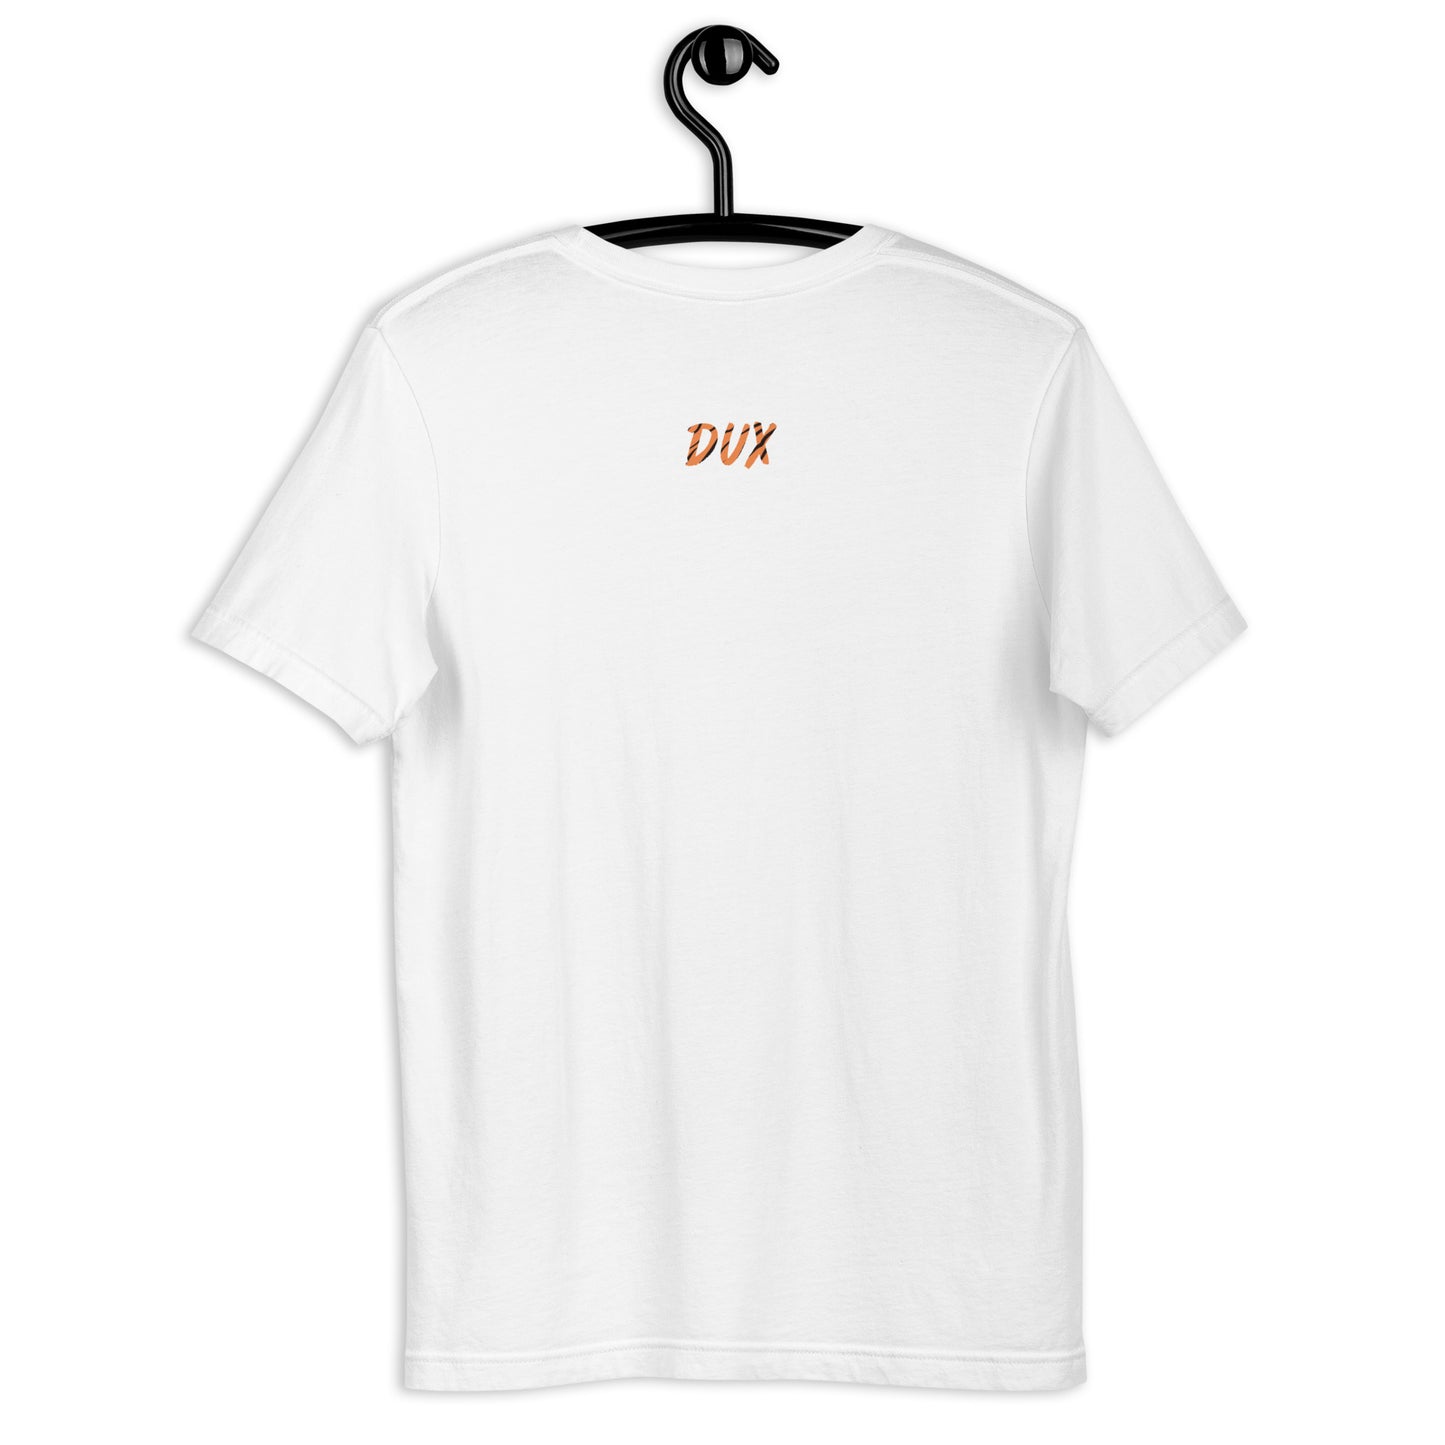 Dux Unisex t-shirt